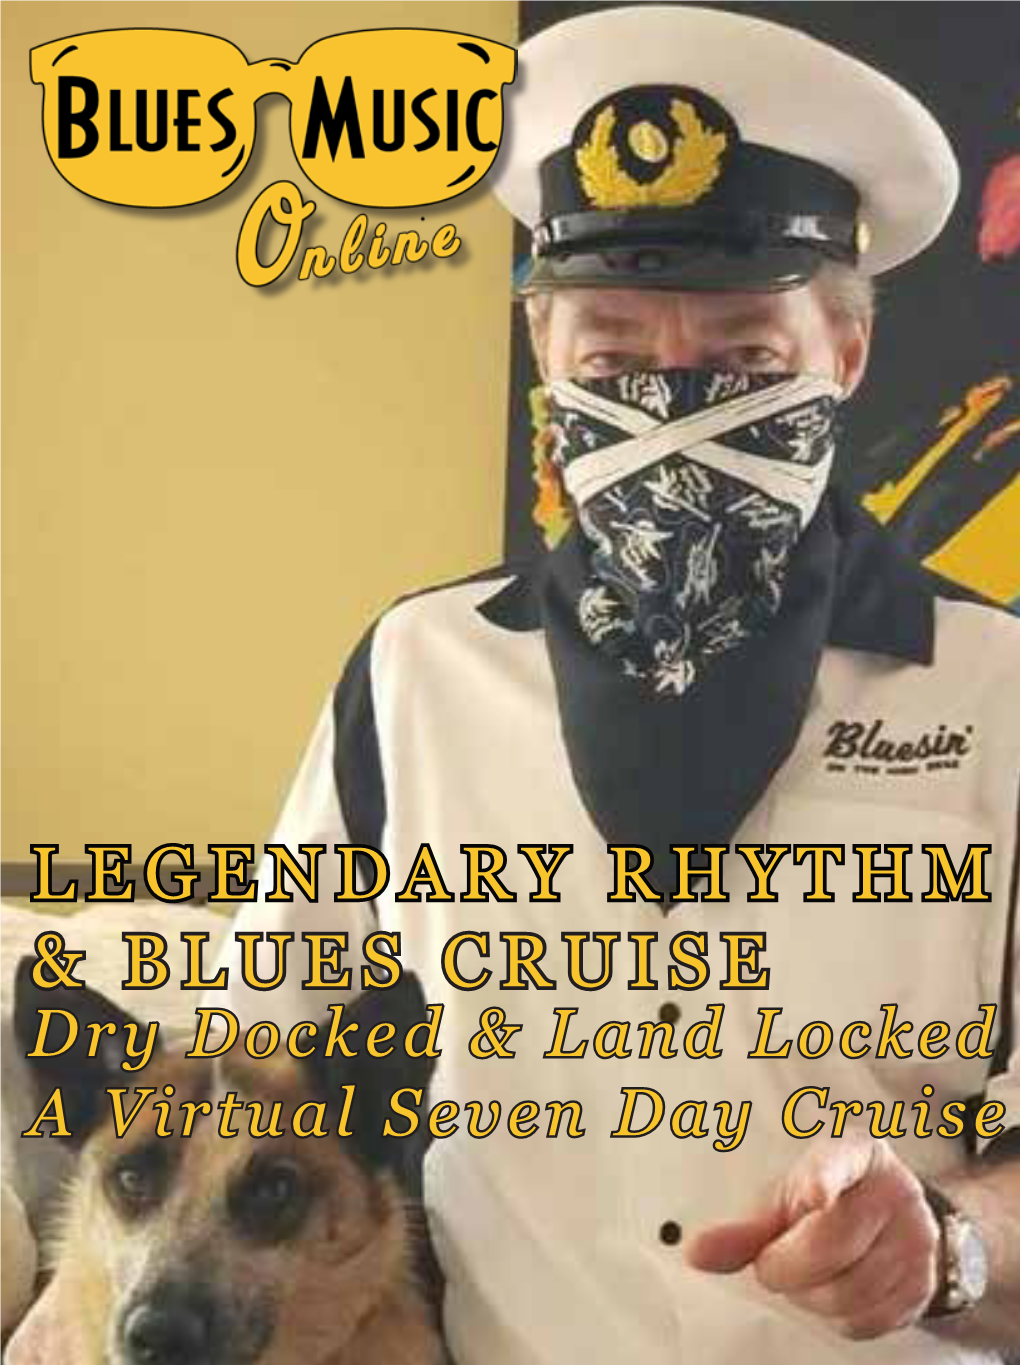 Legendary Rhythm & Blues Cruise